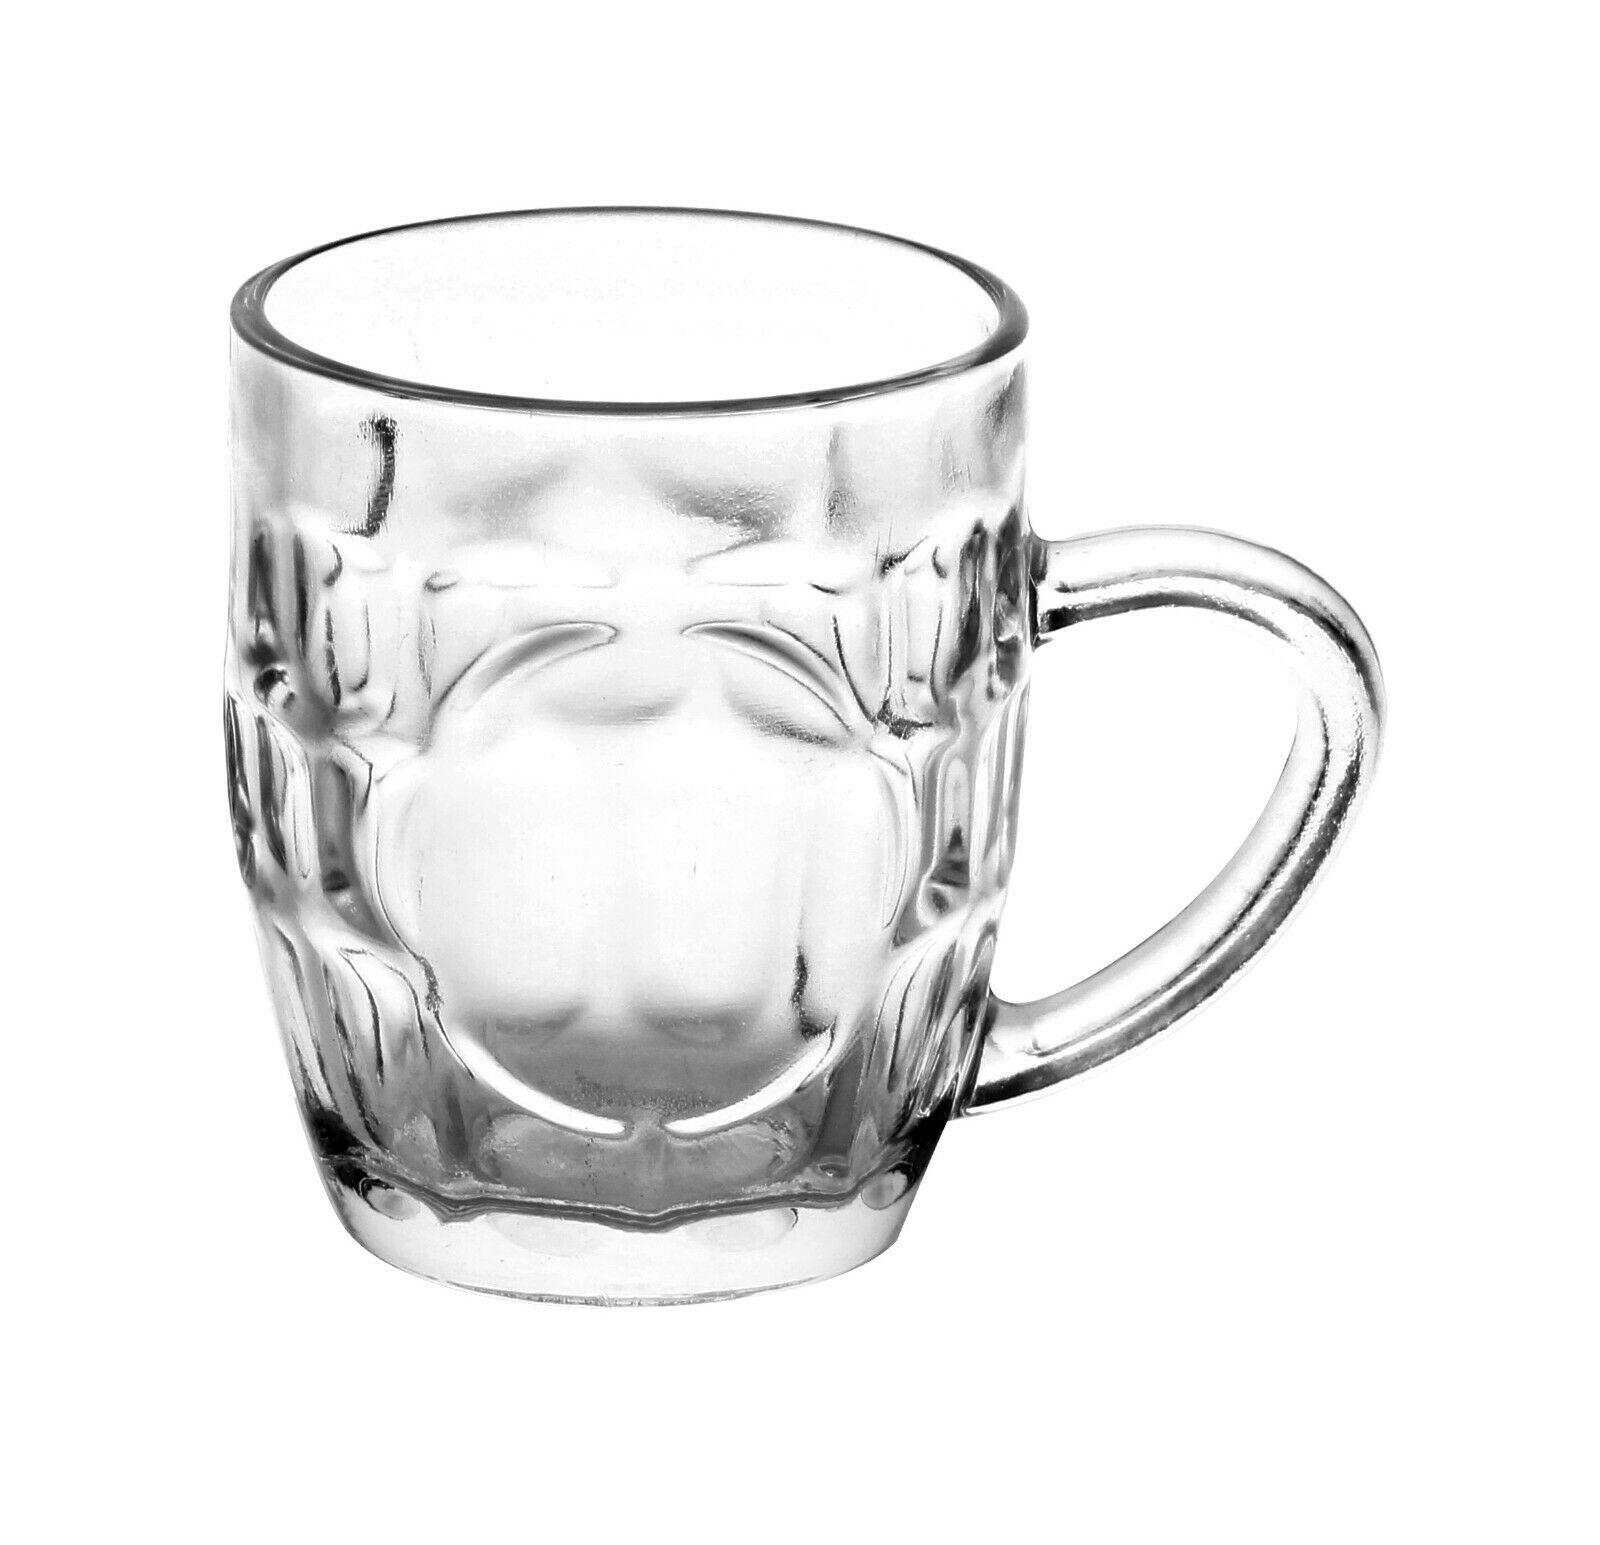 6x German Beer Stein Glass 1L Dimpled Mug Tankard Drink Pint Cider Bar Pub